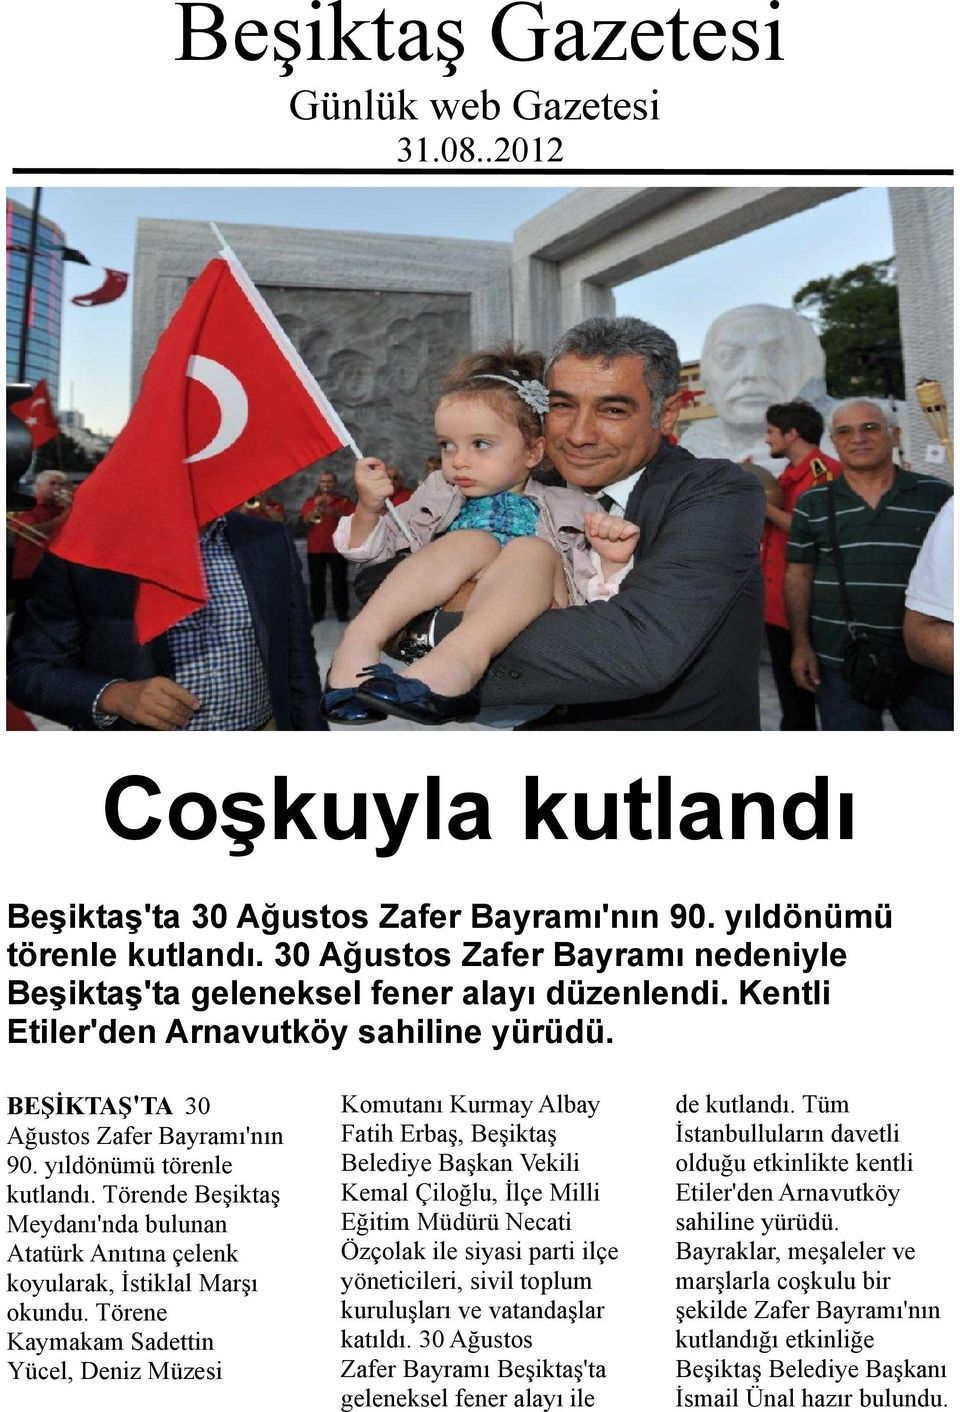 Törende Beşiktaş Meydanı'nda bulunan Atatürk Anıtına çelenk koyularak, İstiklal Marşı okundu.